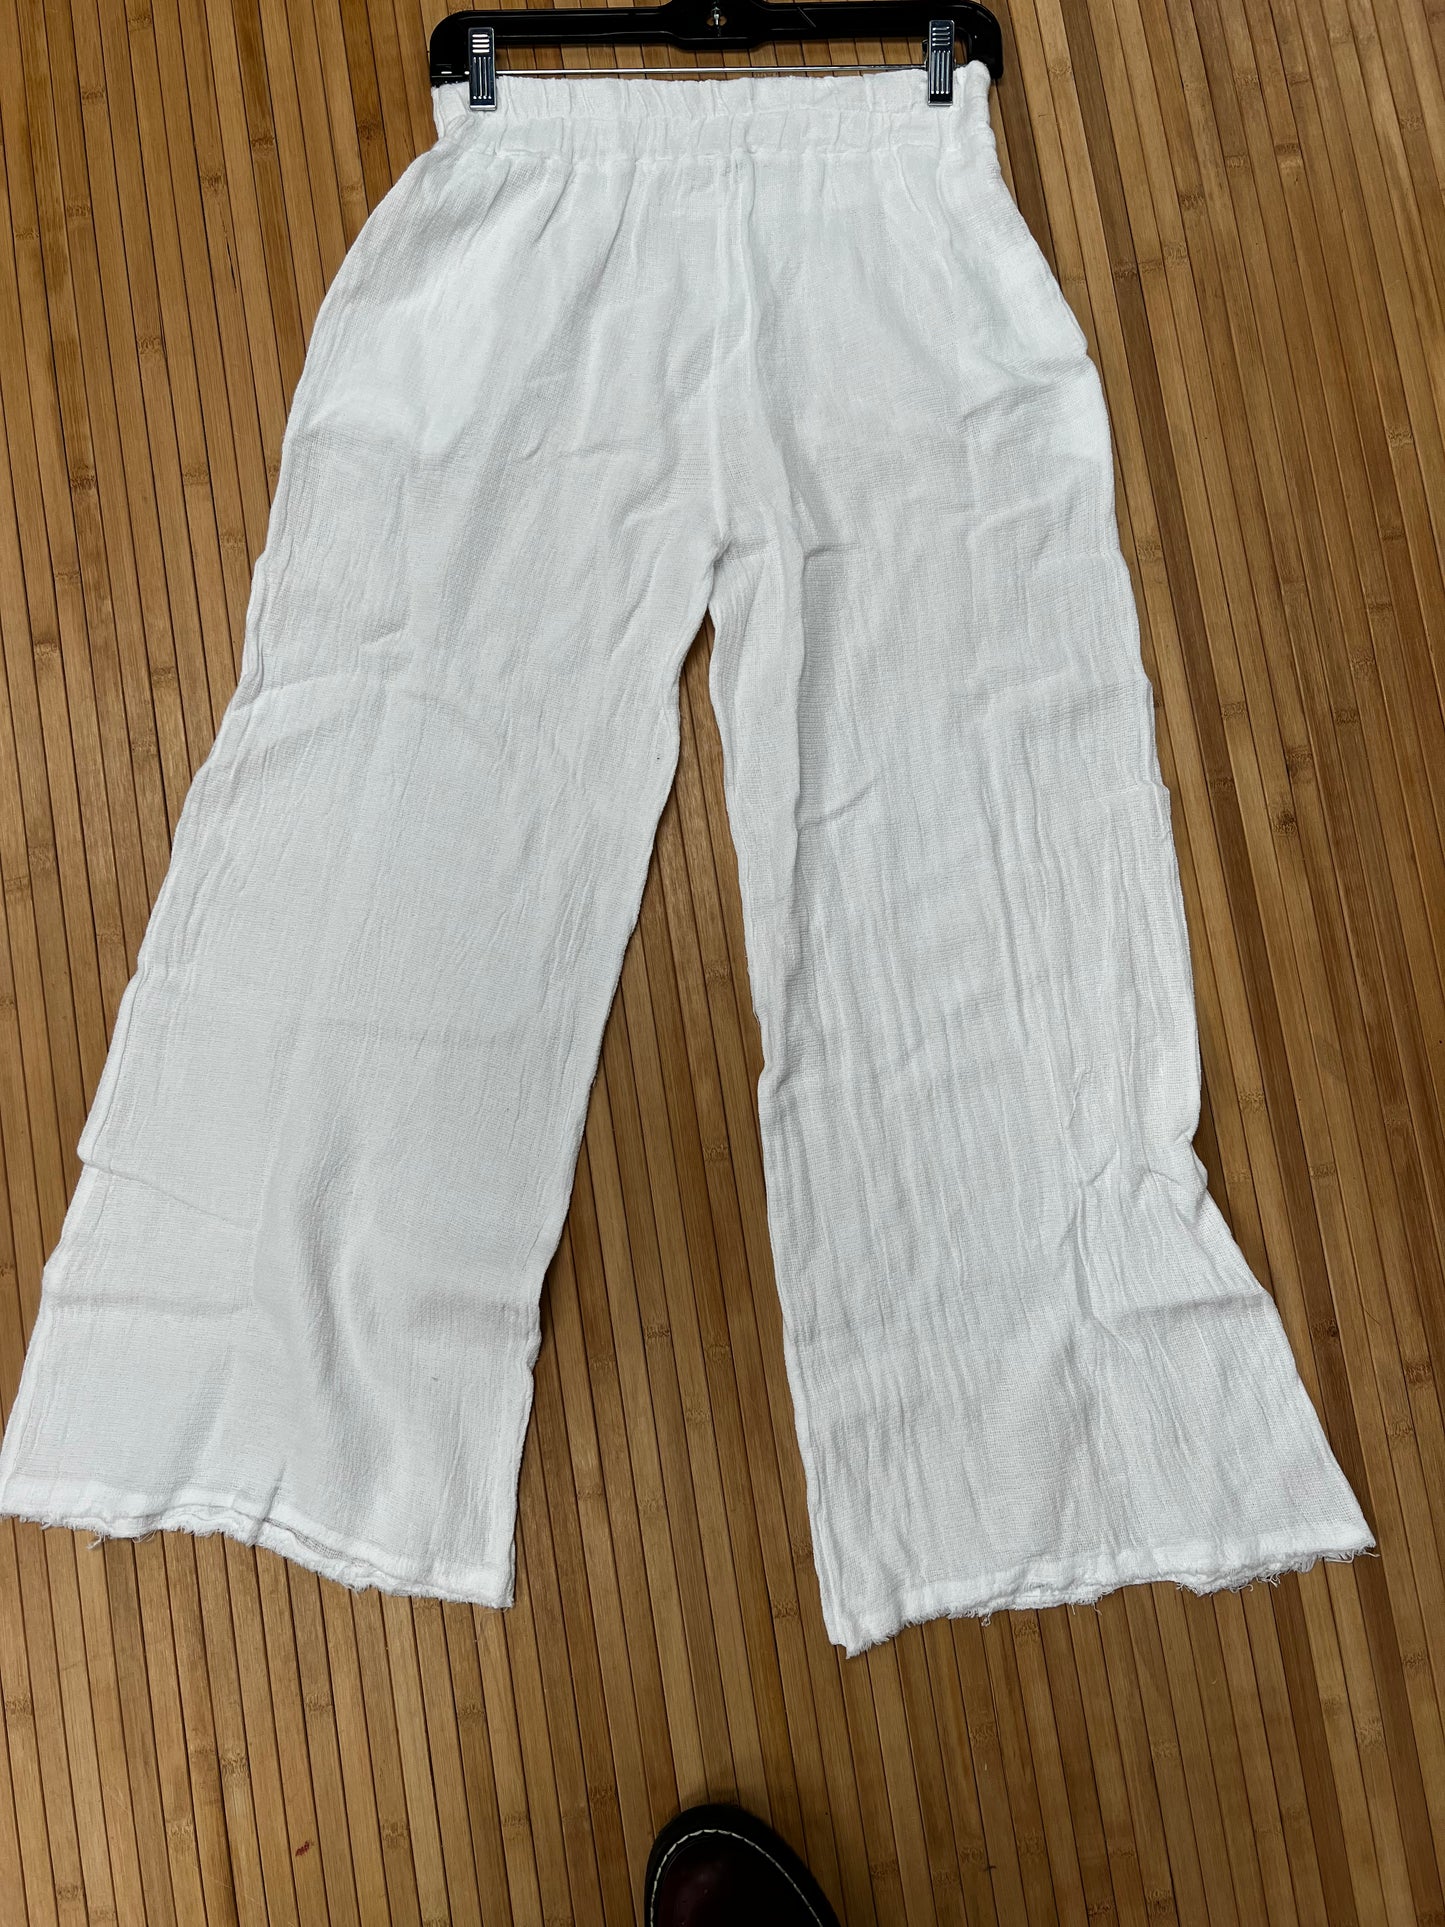 Linen weaved Italian wide leg pants.